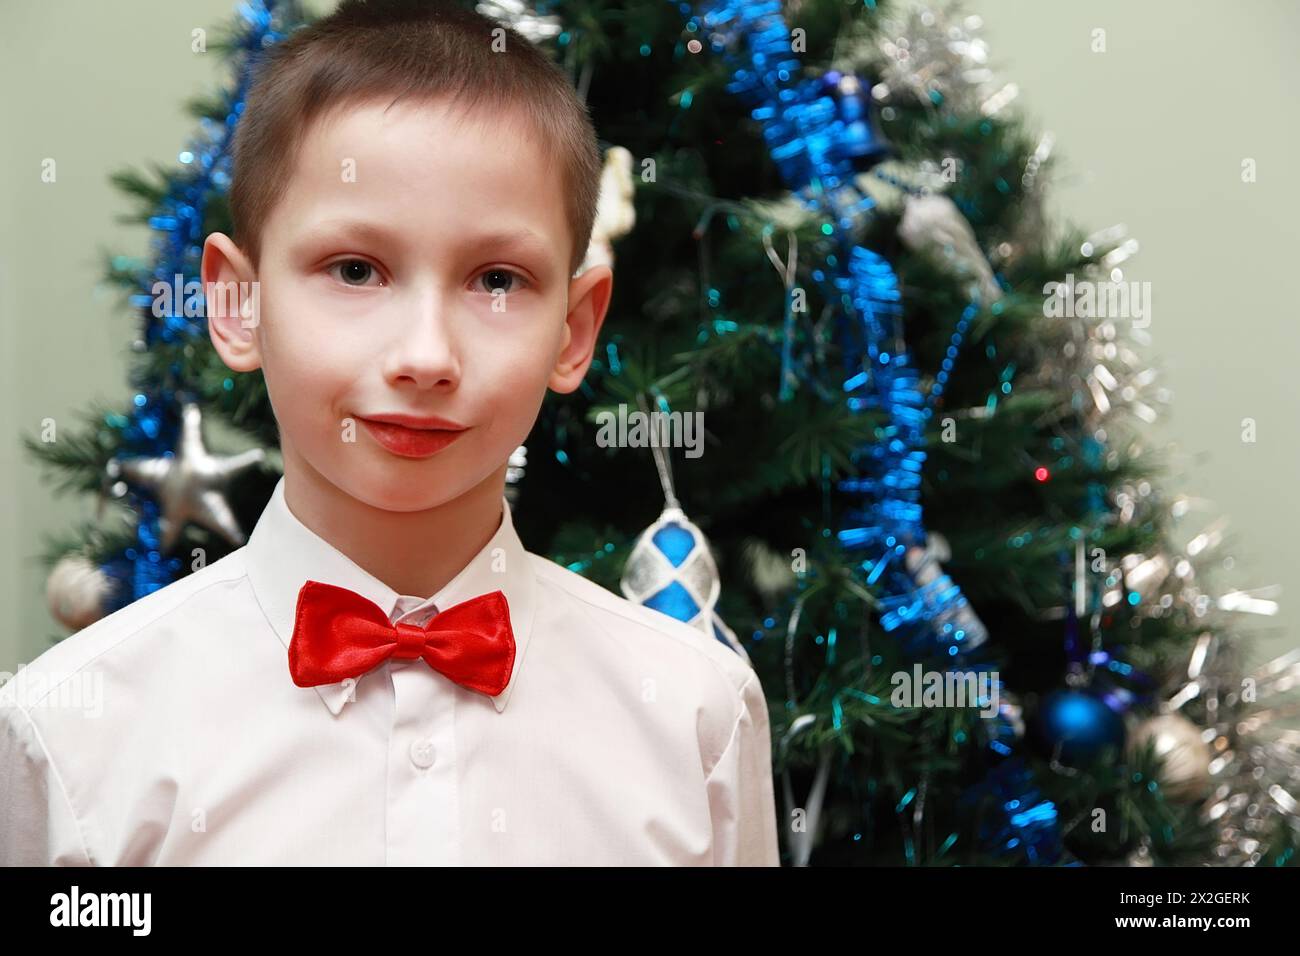 Junge in weißem Hemd und roter Schleife, der neben dem Weihnachtsbaum steht Stockfoto